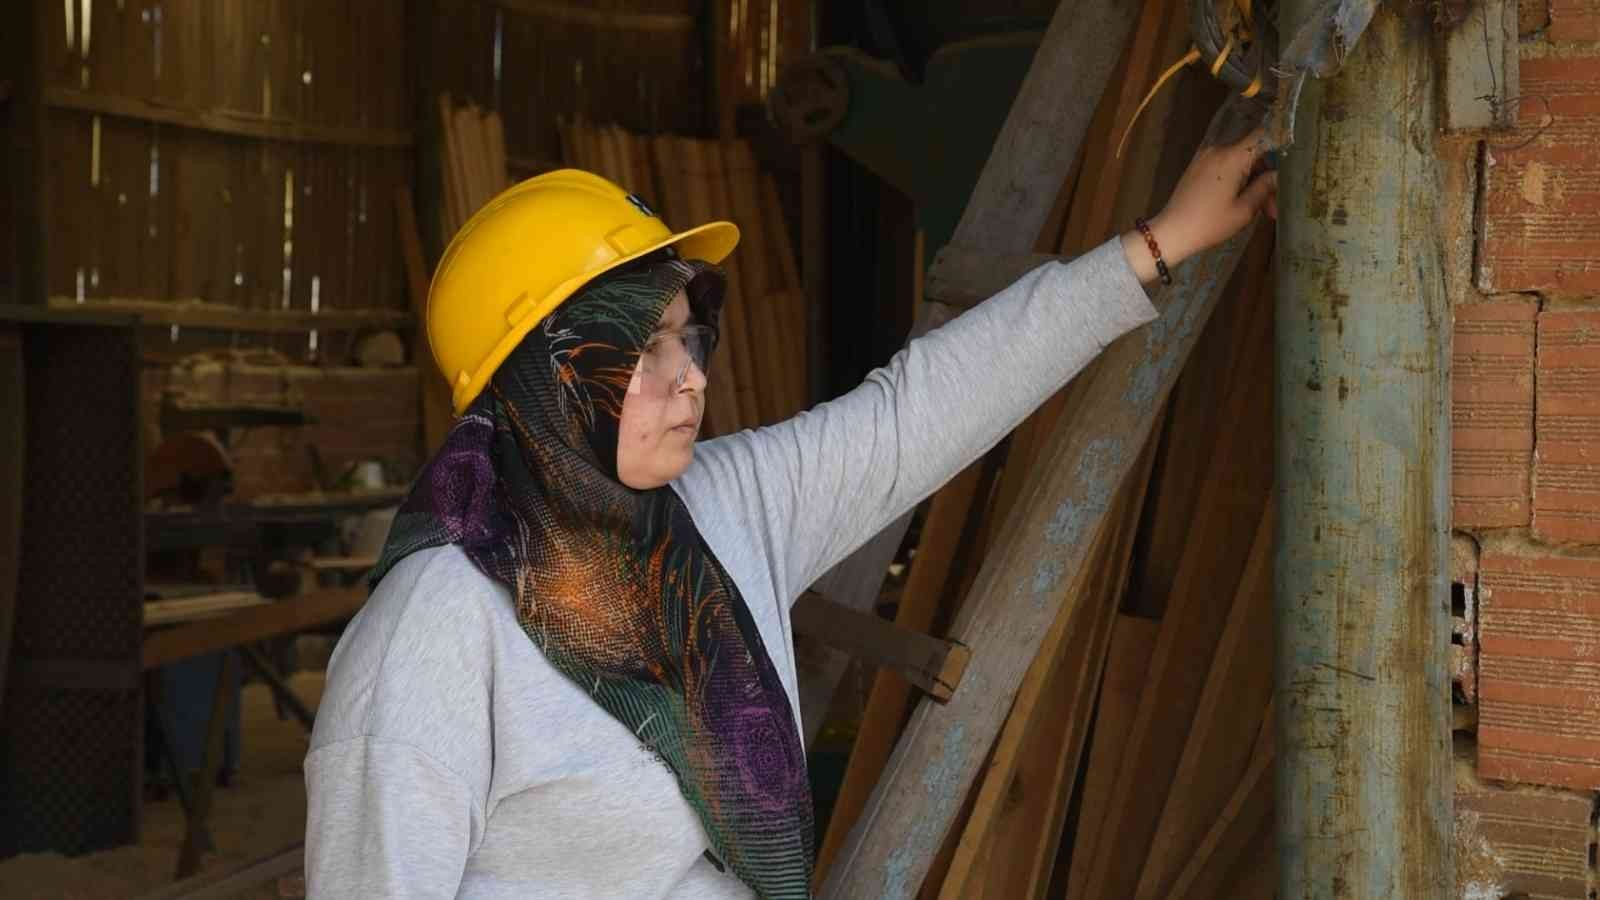 Balıkesir’in Dursunbey ilçesinde 38 yaşındaki iki çocuk annesi Kezban Varol, ağaç sanayisinde çalışan tek kadın tornacı olarak dikkat çekiyor ...